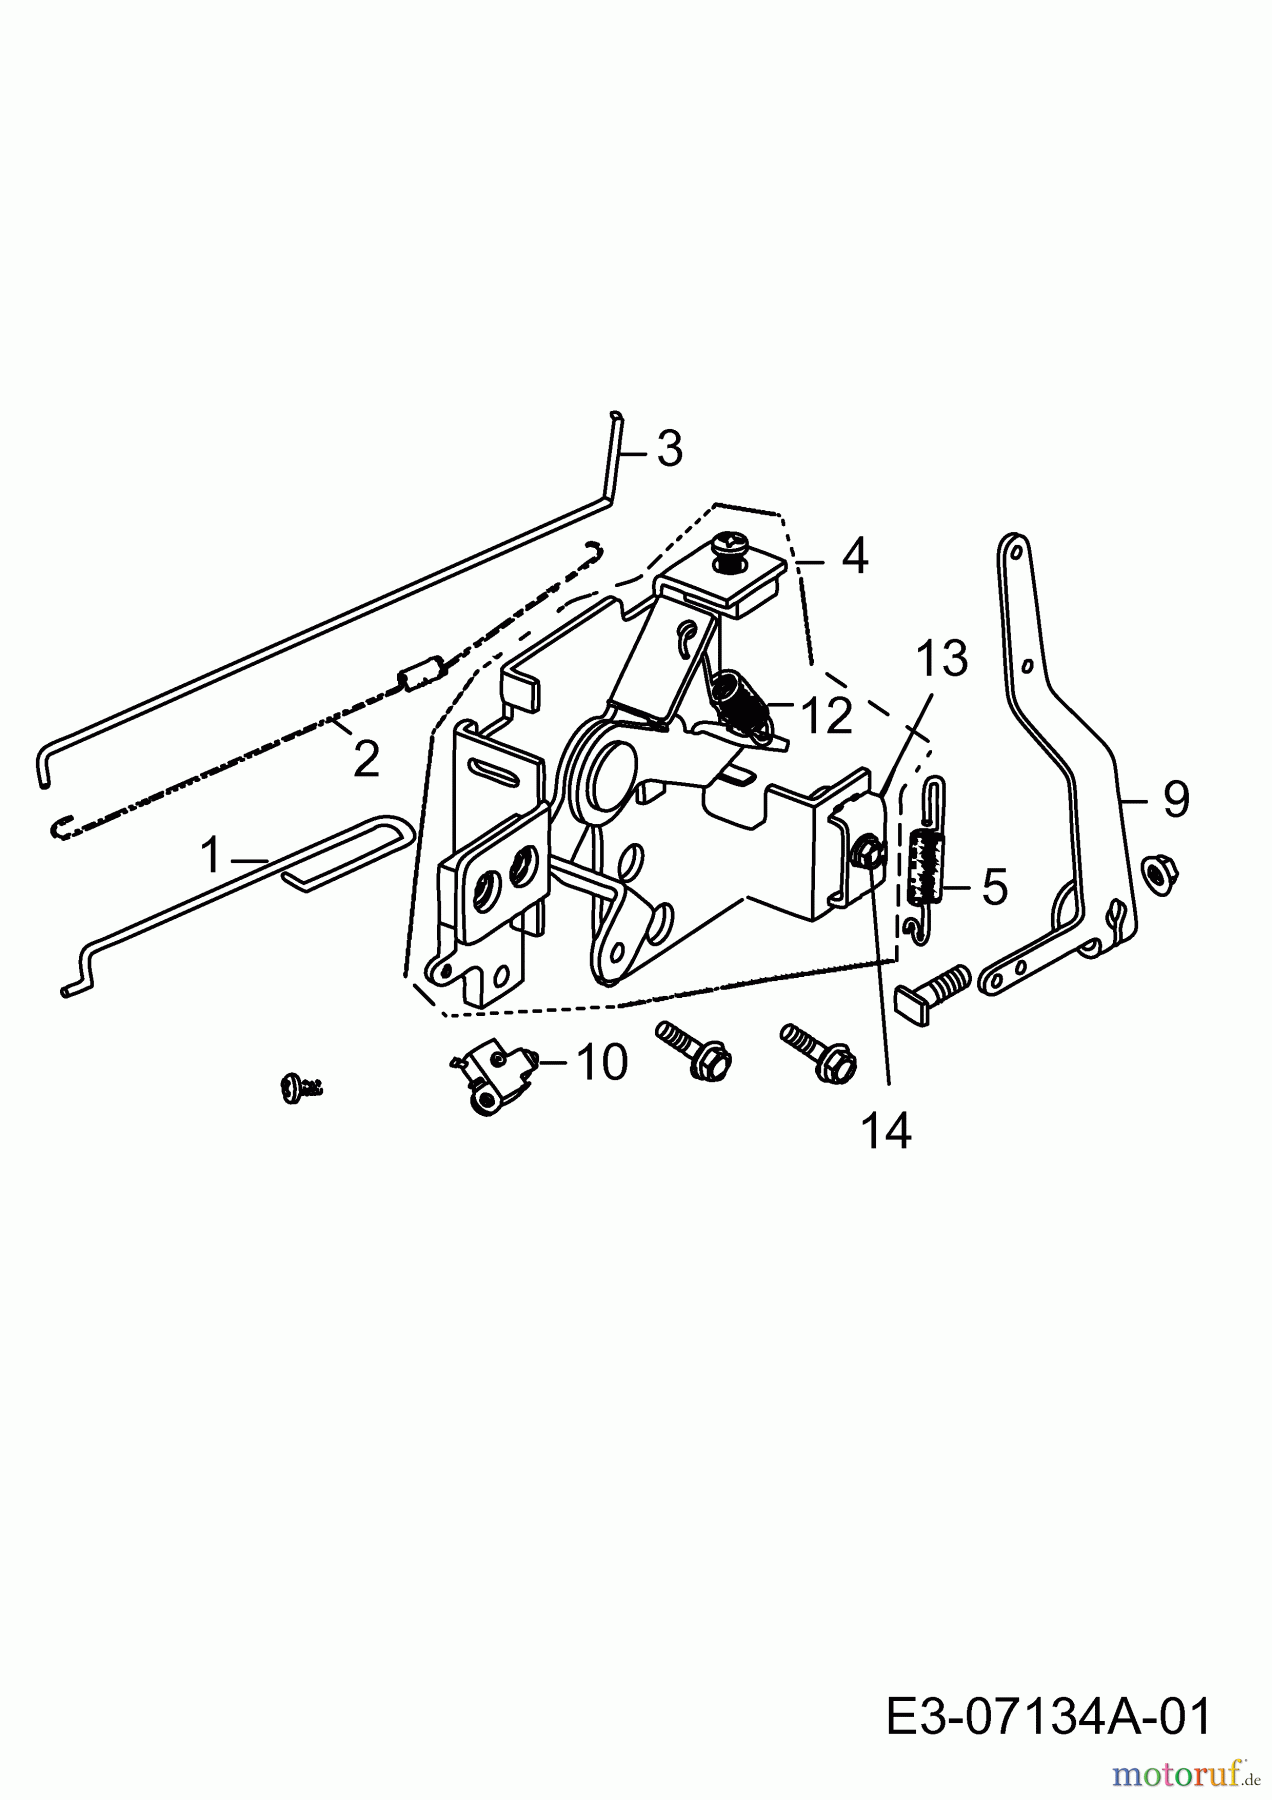  Rover-Motoren i 5000 (mit Schnorchelfilterdeckel) RL04080122  (2011) Regelung